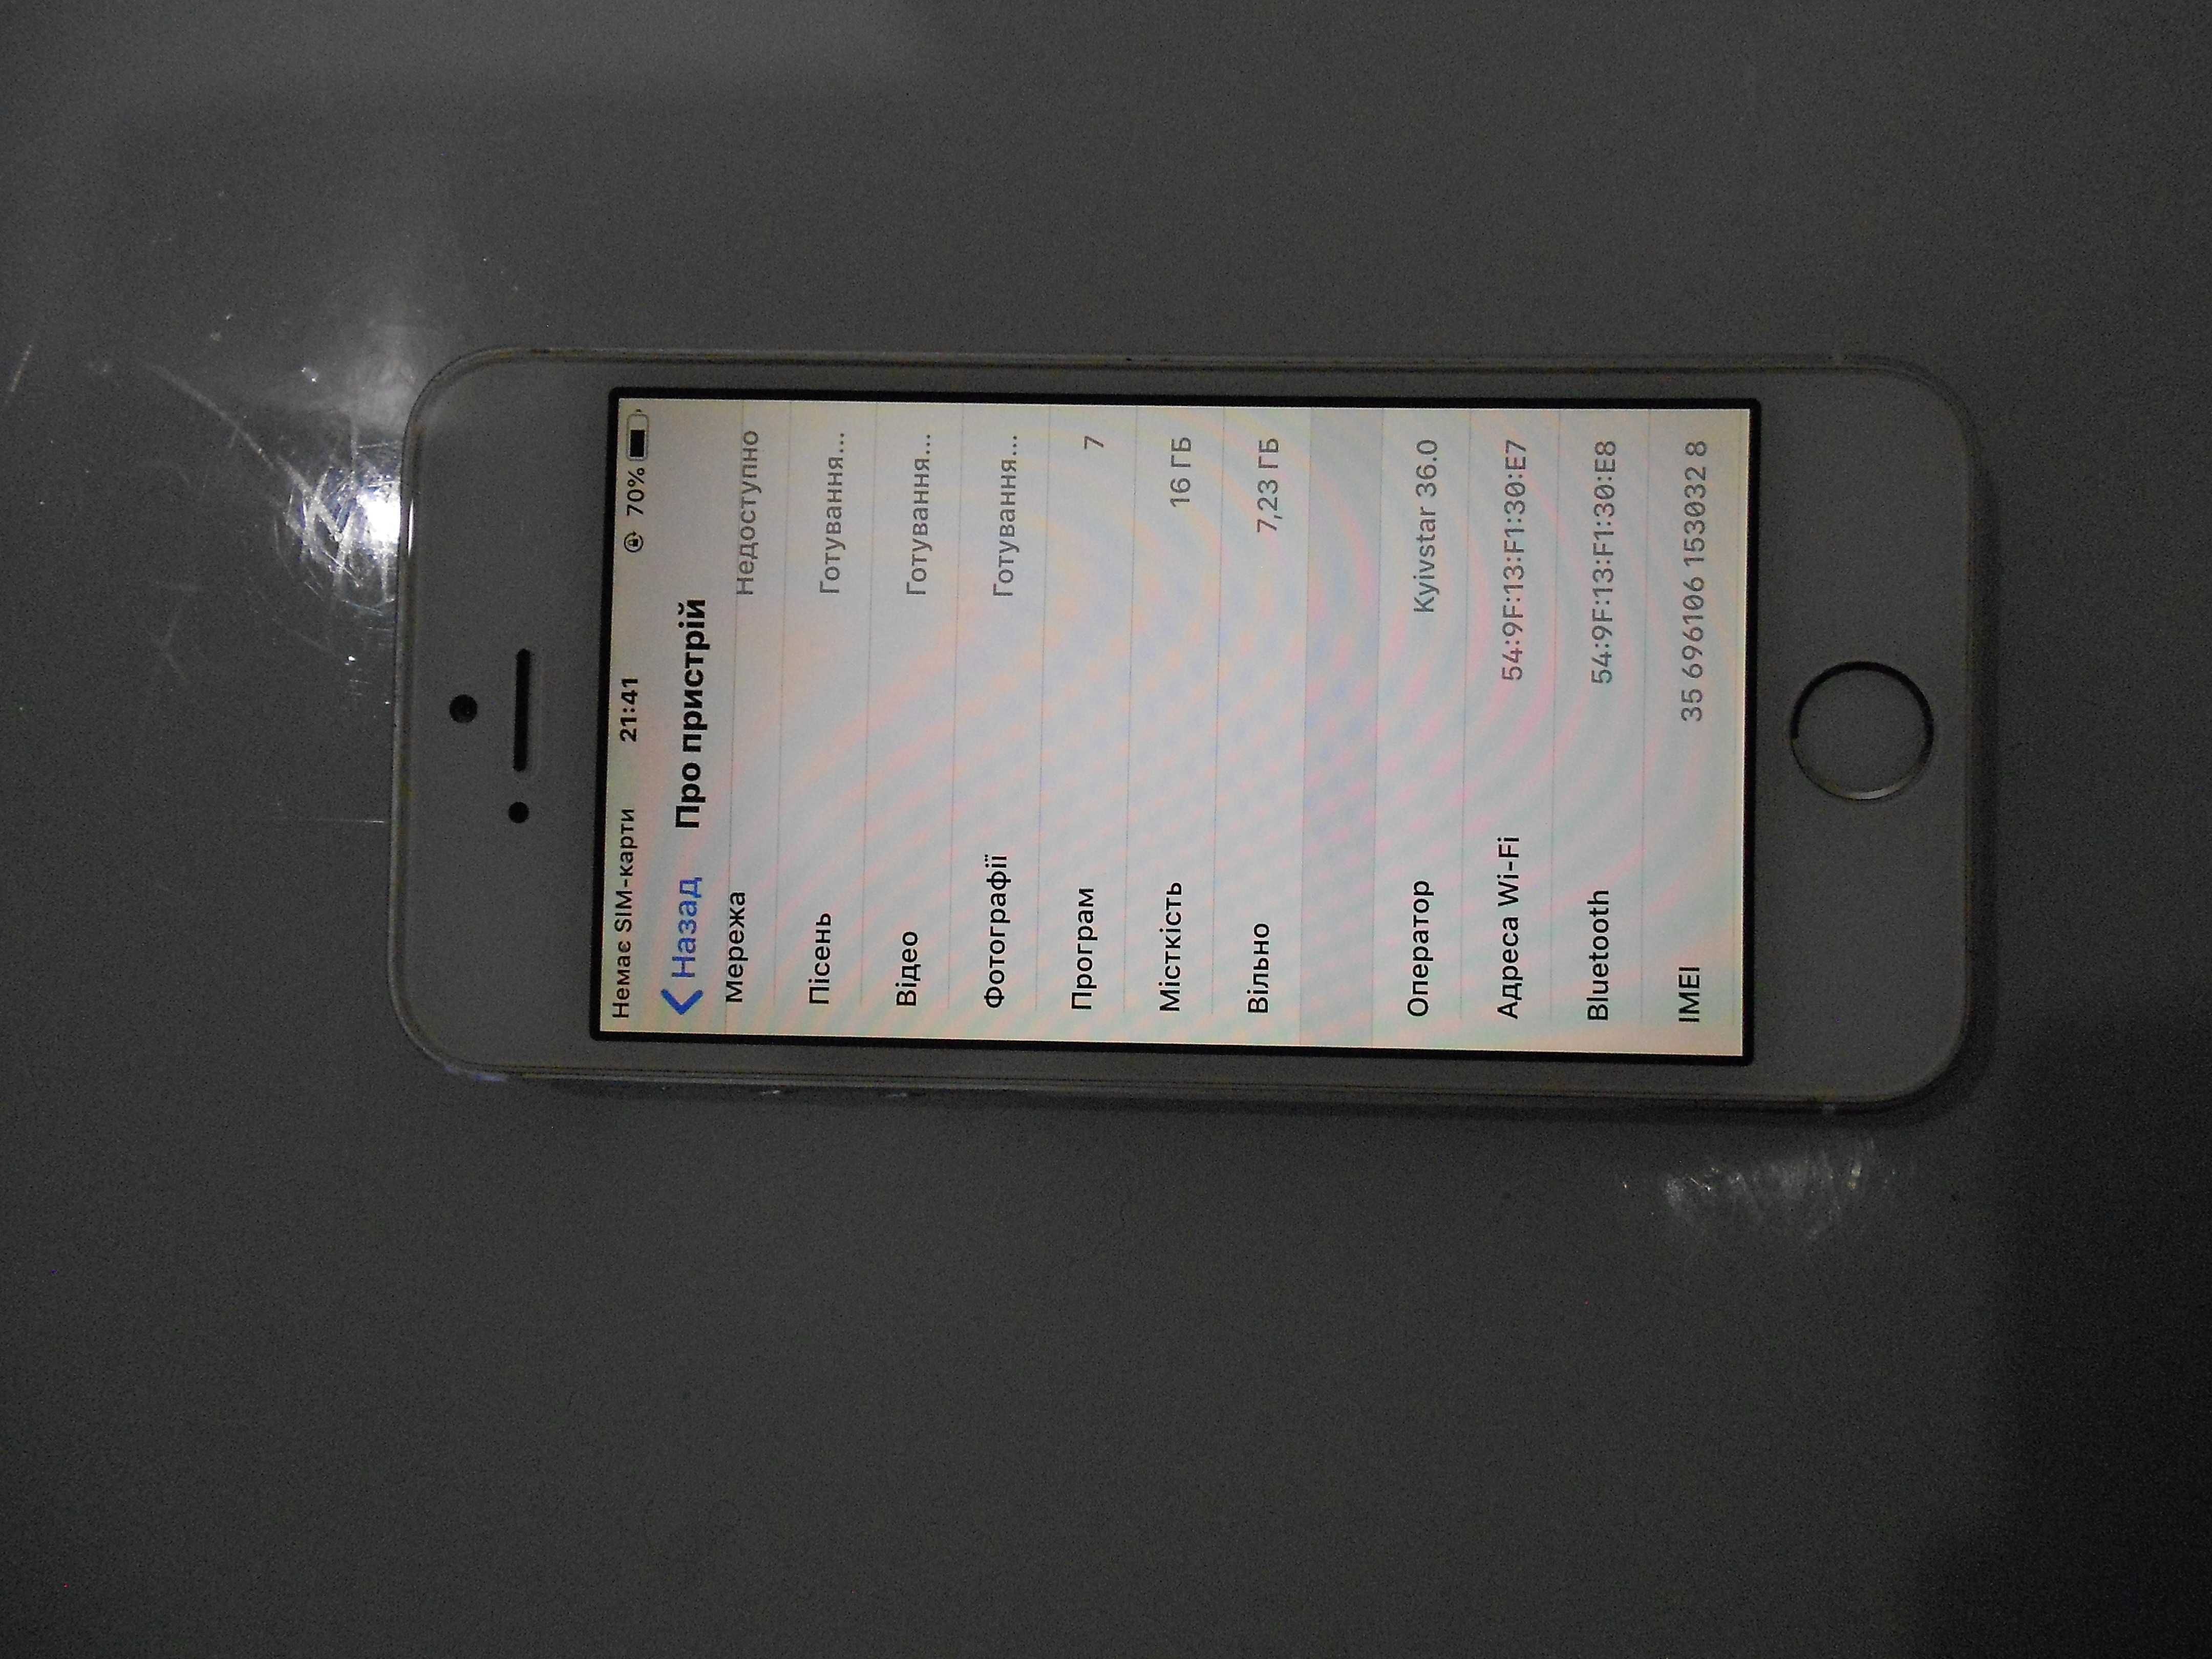 iPhone 5S _16 Gb